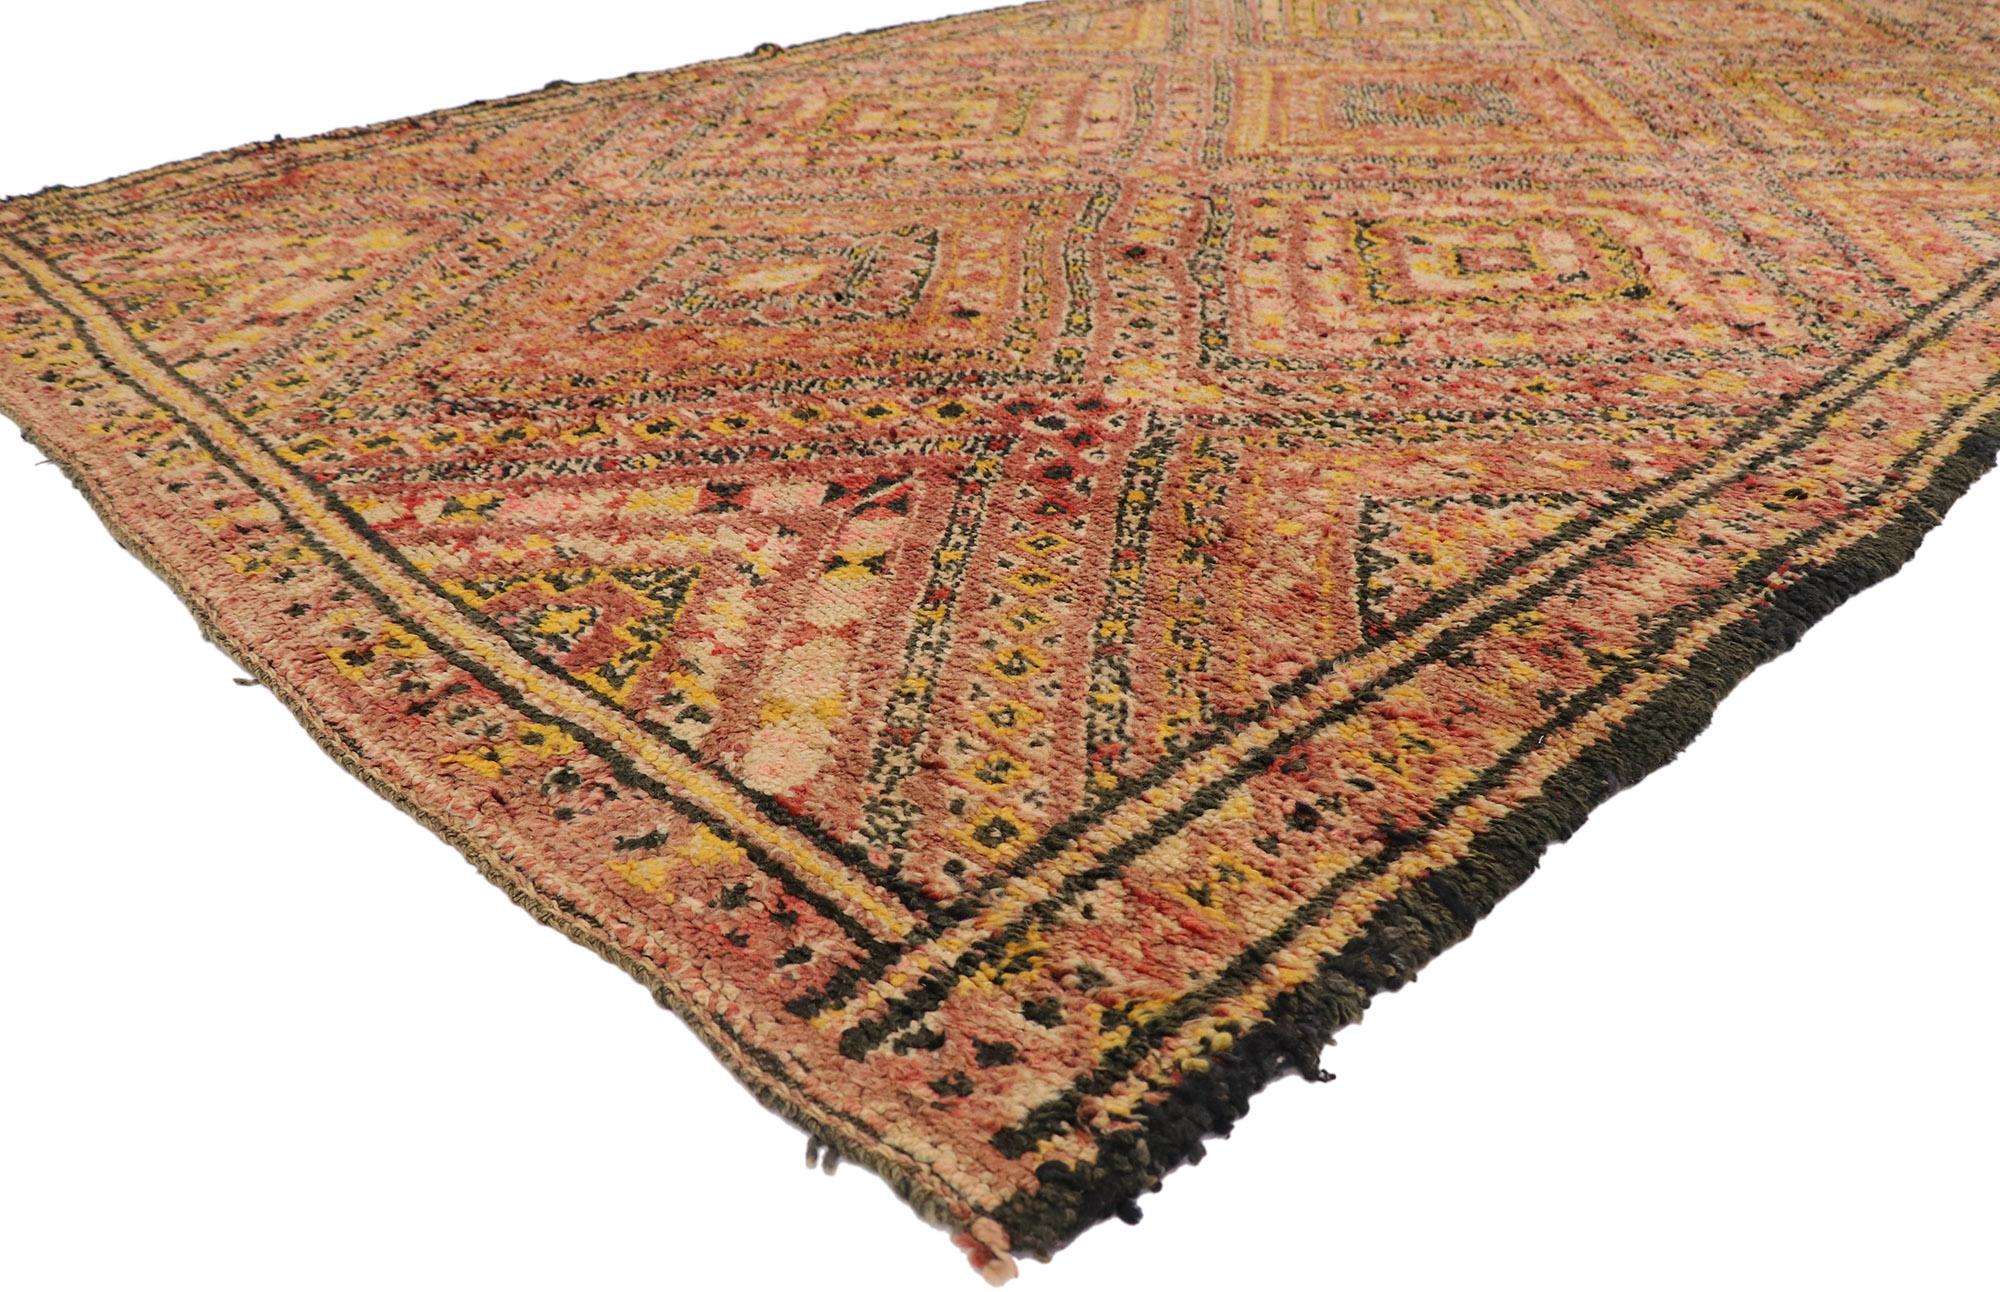 21277 Vintage Berber Beni M'Guild Marokkanischer Teppich mit Mid-Century Modern Style 06'11 x 11'10. Dieser handgeknüpfte marokkanische Beni M'Guild-Teppich aus alter Berberwolle besticht durch sein kühnes, ausdrucksstarkes Design, seine